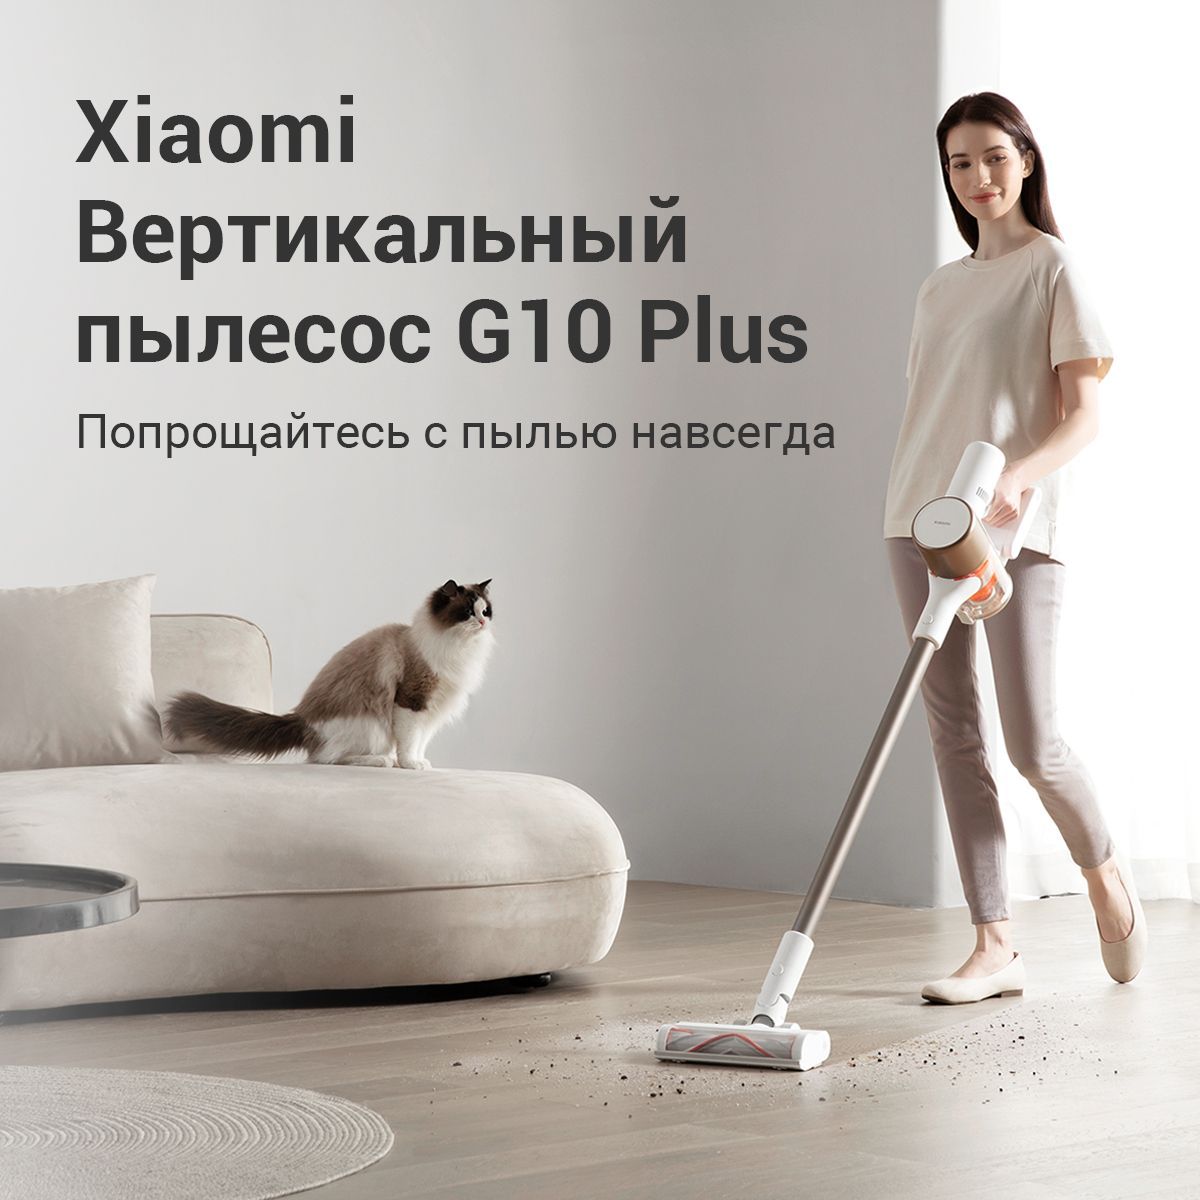 Пылесос аккумуляторный xiaomi vacuum cleaner g10 plus. Xiaomi Vacuum Cleaner g10 Plus eu. Сравнение вертикальных пылесосов. Xiaomi Vacuum Cleaner g10 Plus eu b207 купить.